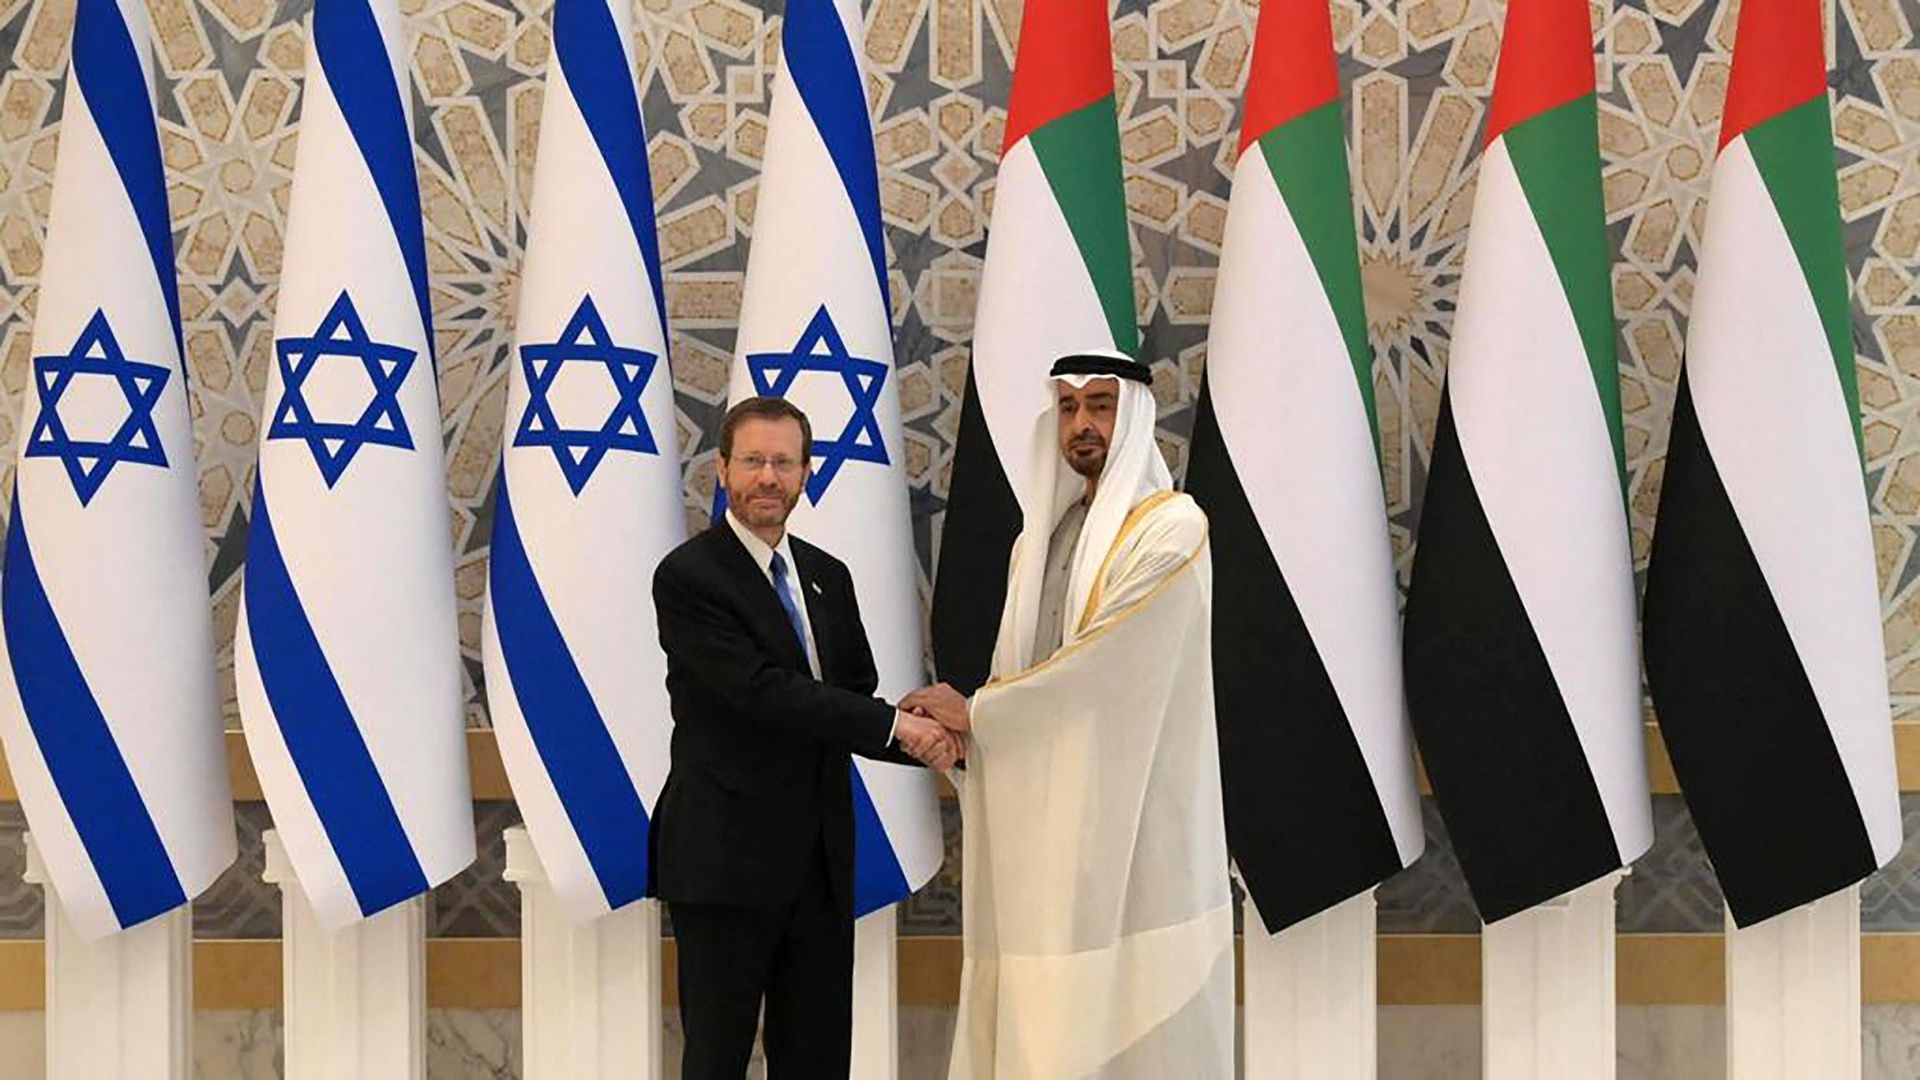 Le prince héritier d'Abu Dhabi, le cheikh Mohammed bin Zayed al-Nahyan (à droite) reçoit la visite du président israélien Isaac Herzog (à gauche) dans la capitale des Émirats arabes unis, Abu Dhabi. Le 30 janvier 2022.